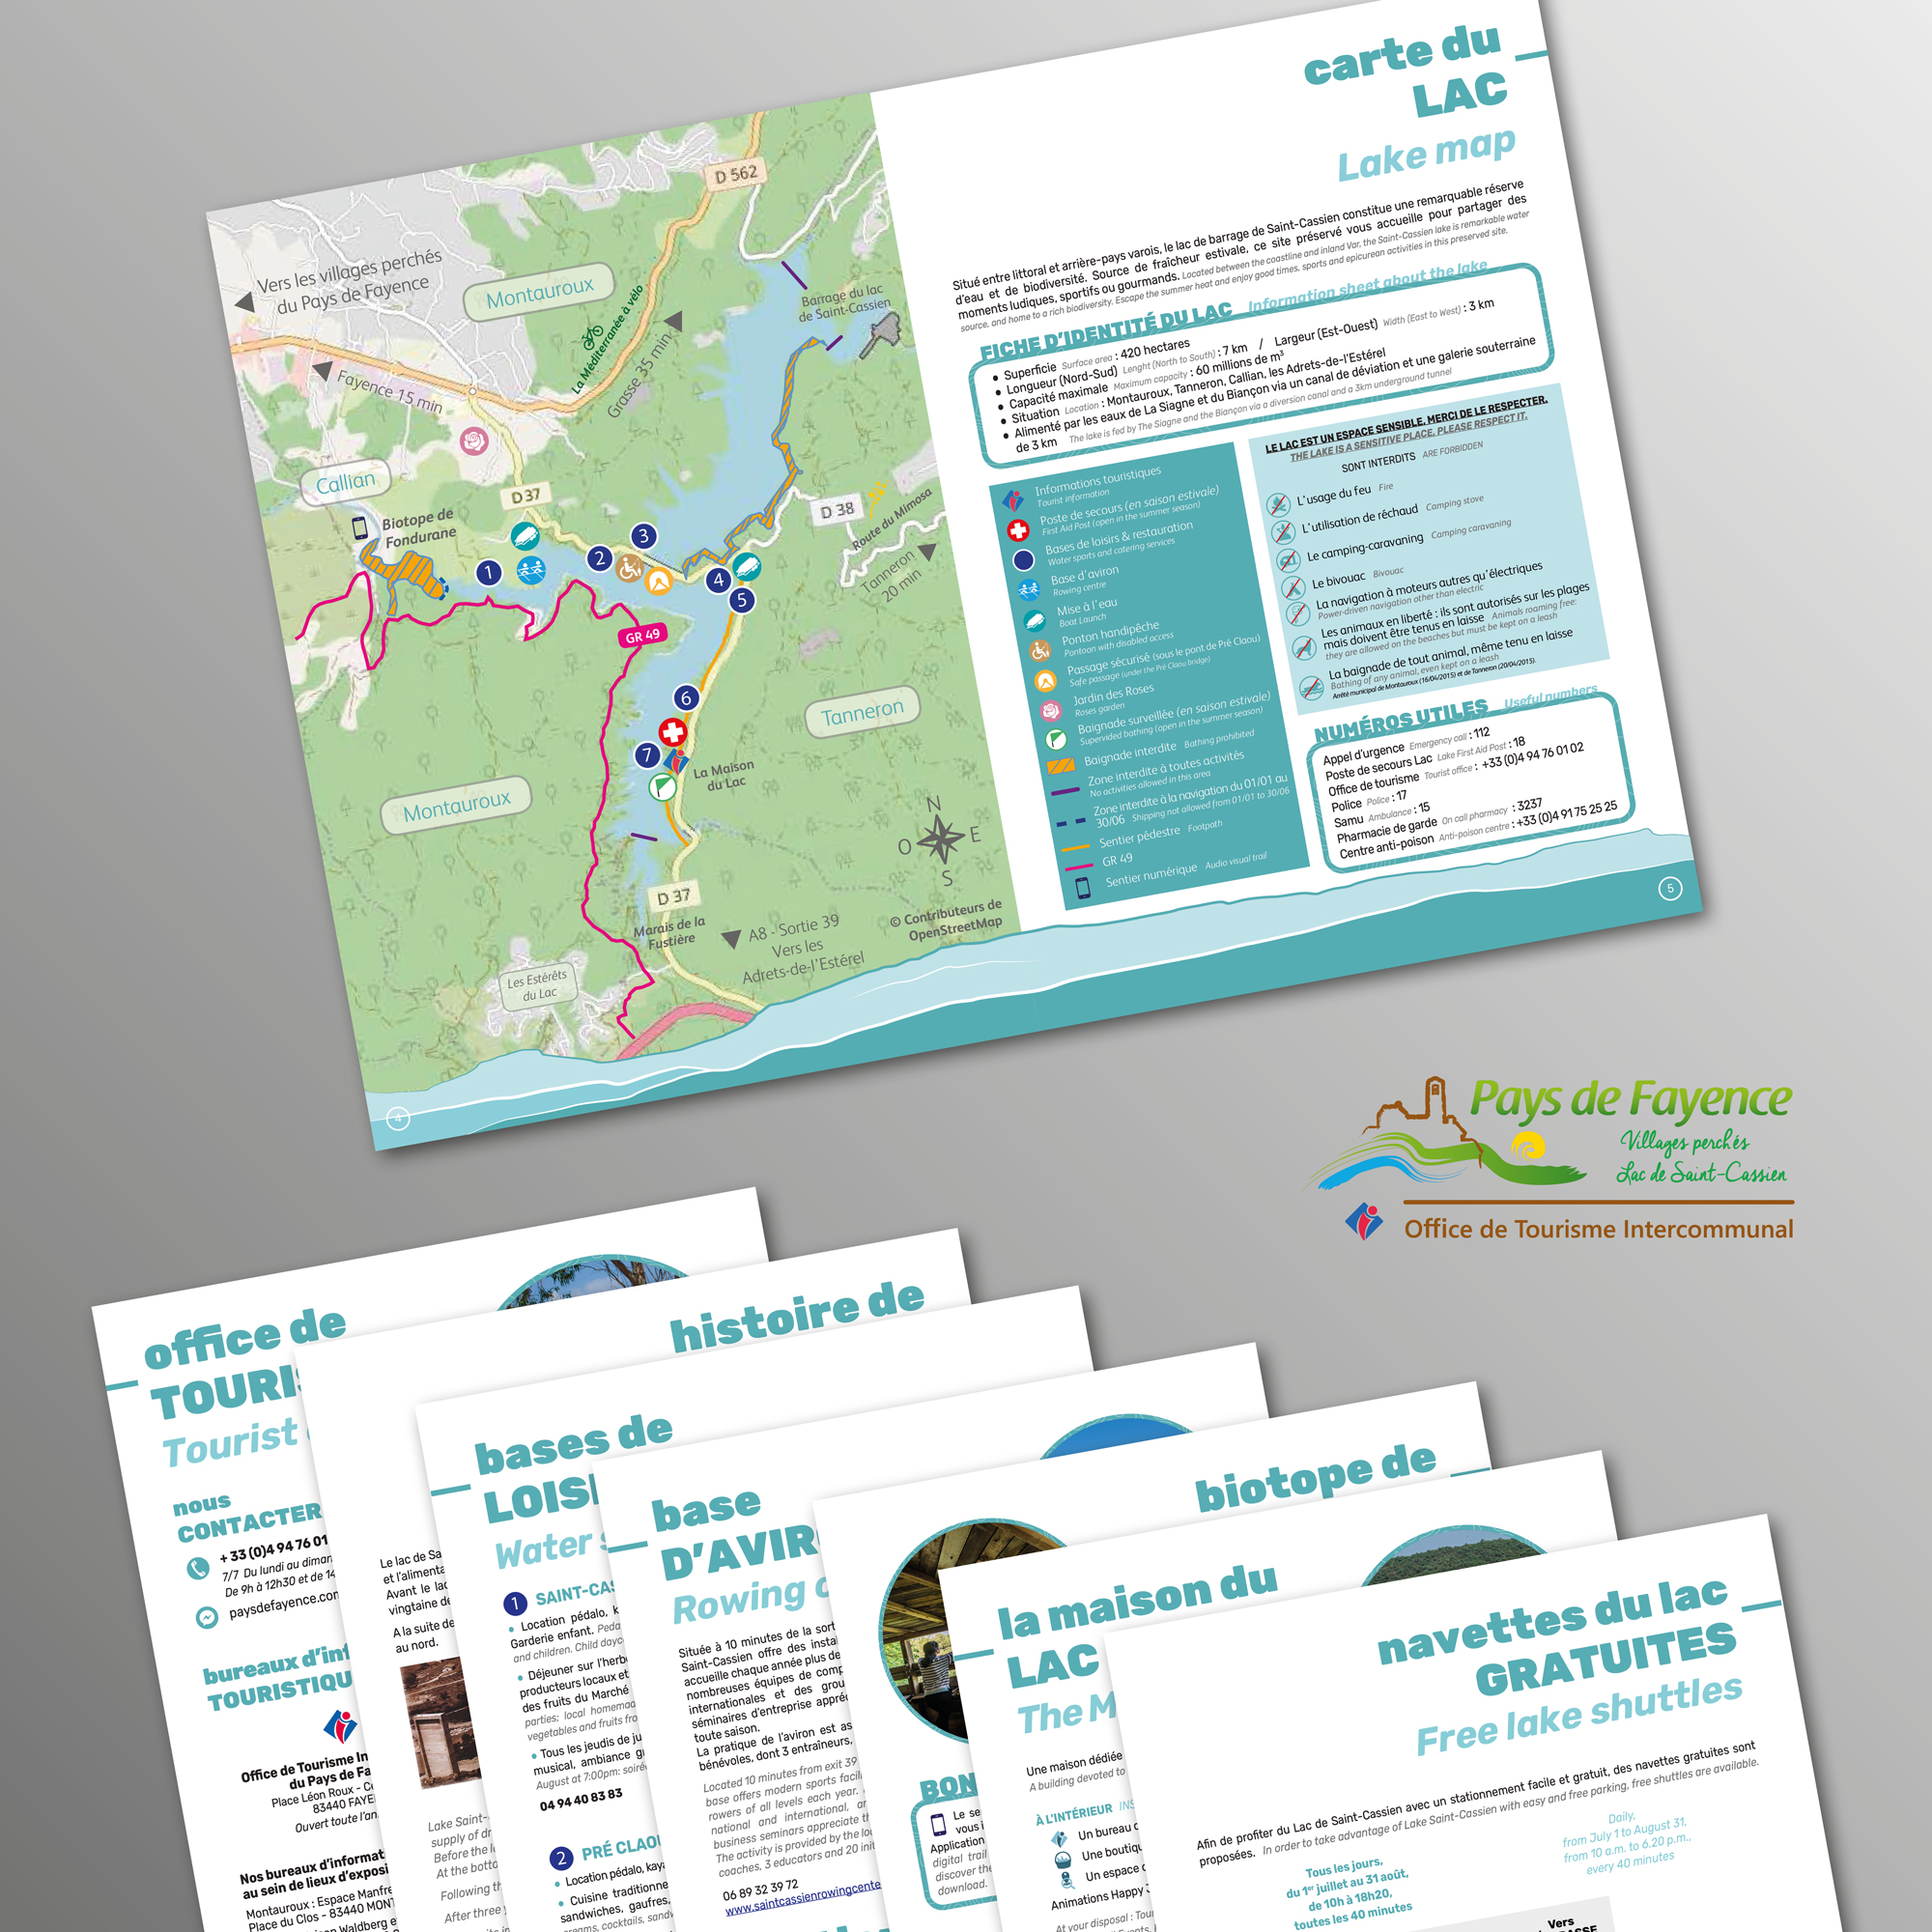 Brochure Au lac de Saint-Cassien pour l'Office de Tourisme Intercommunal du Pays de Fayence